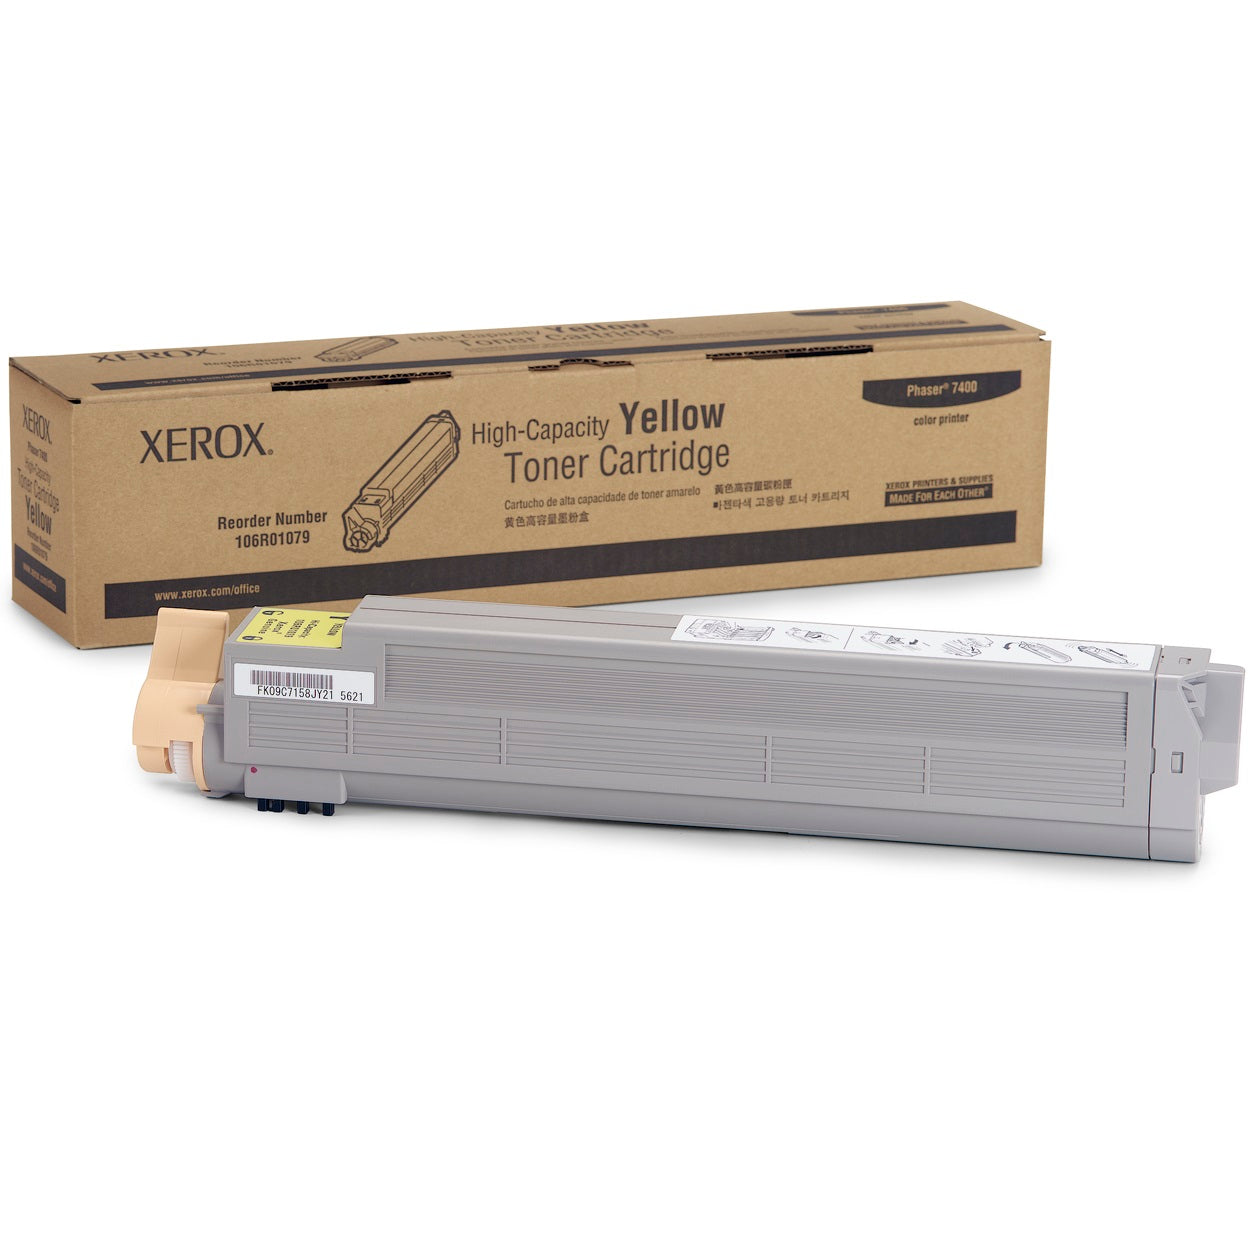 Absolute Toner XEROX 106R01079 Genuine Original Yellow High Yield Toner Cartridge For Xerox Phaser 7400 Colour Laser Printer Original Xerox Cartridges